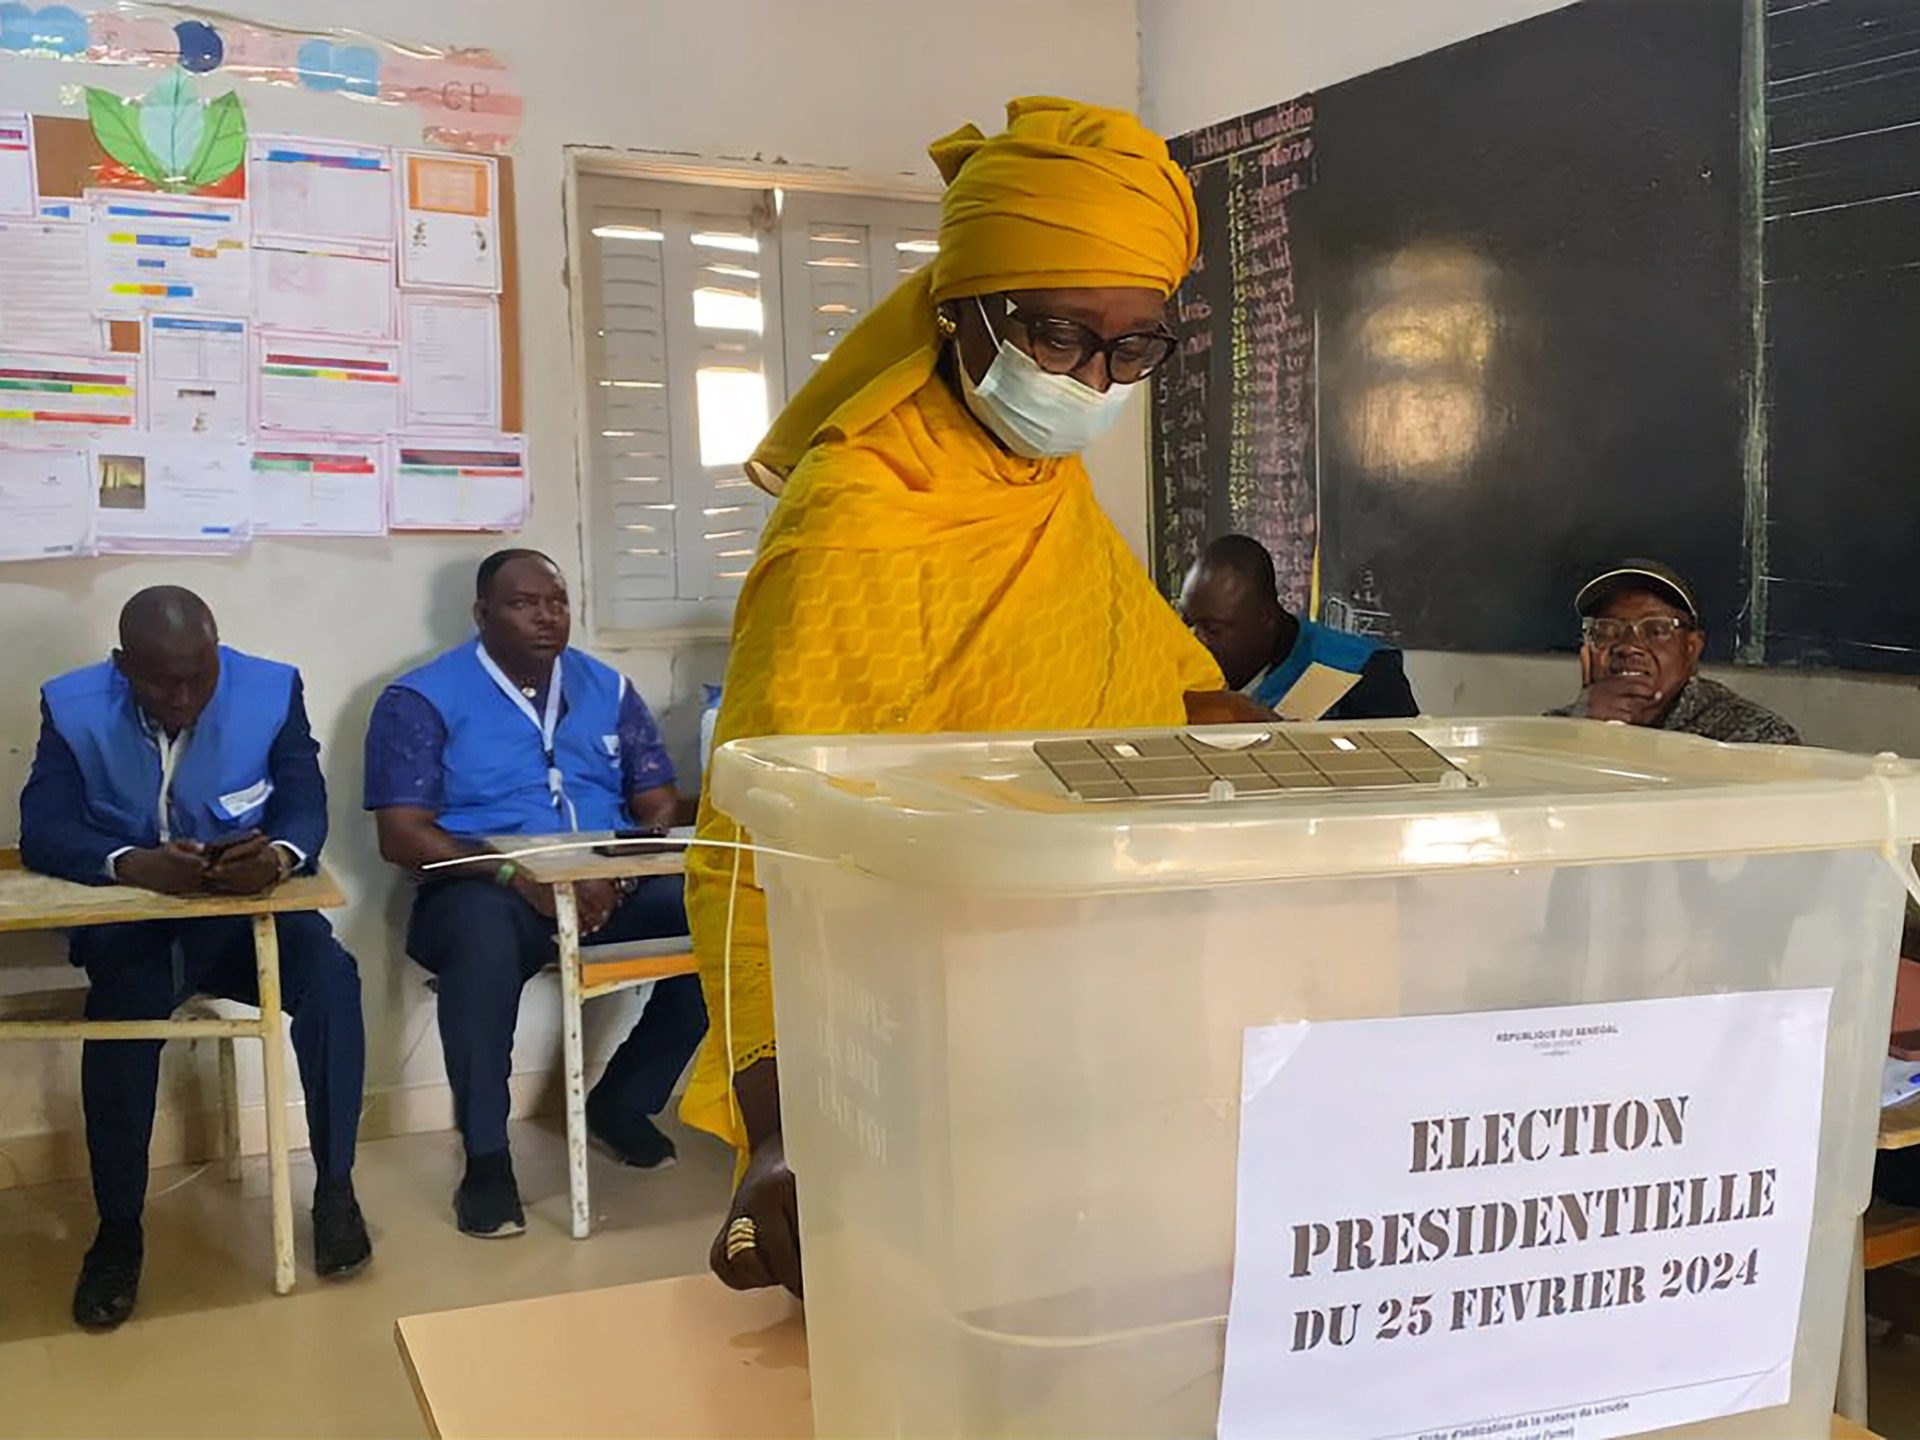 عرس الديمقراطية في السنغال .. ملاحظات وتحديات | سياسة – البوكس نيوز